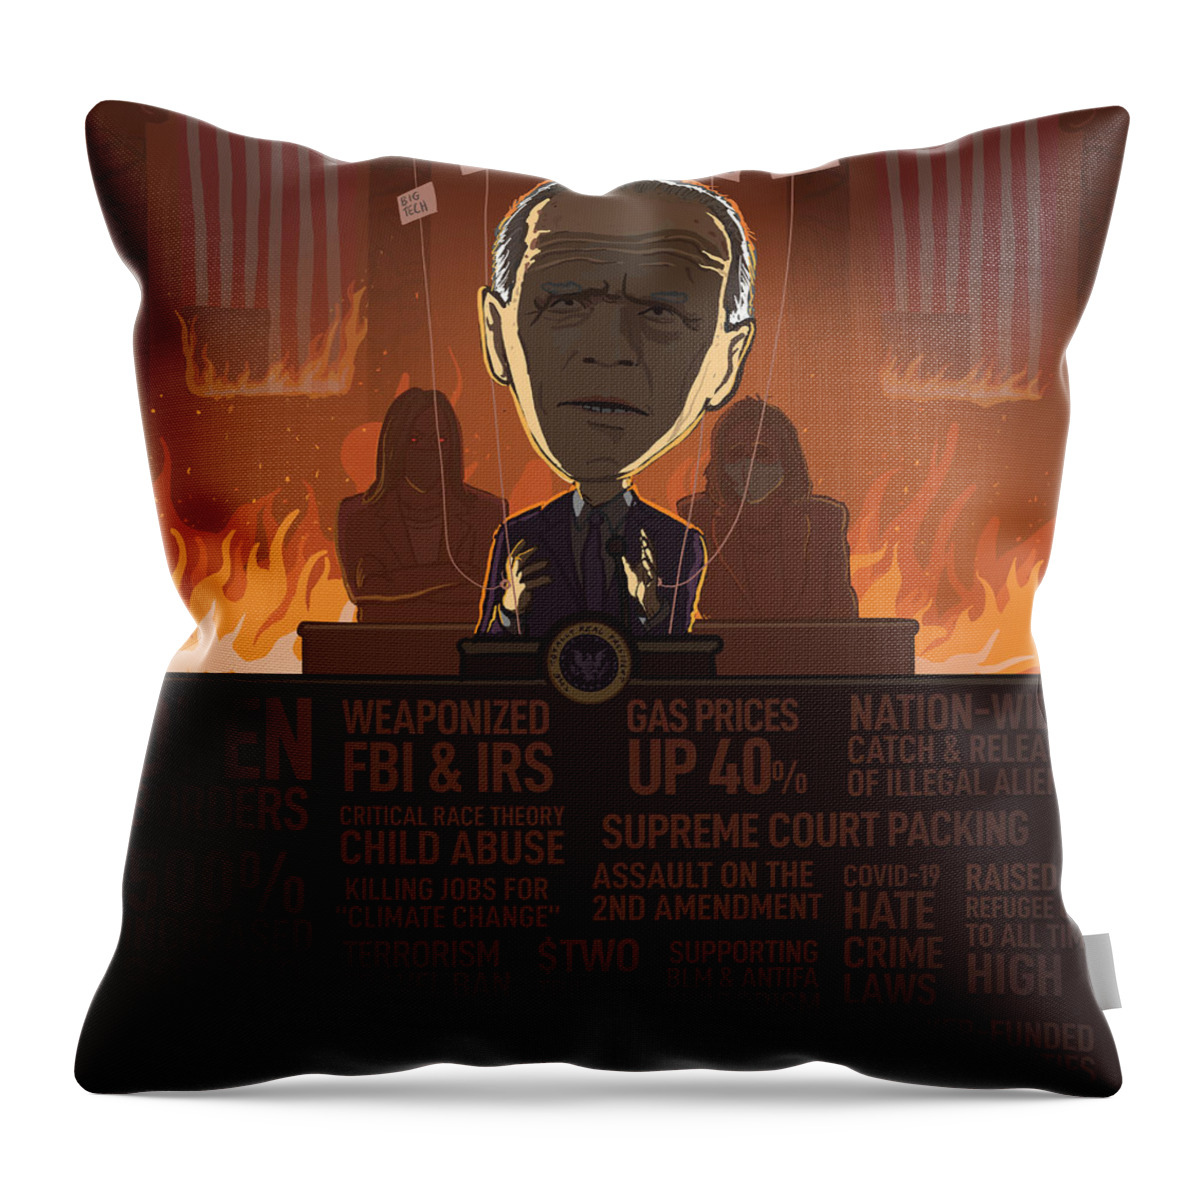 Sleepyjoe Throw Pillow featuring the digital art Biden First 100 Days by Emerson Design